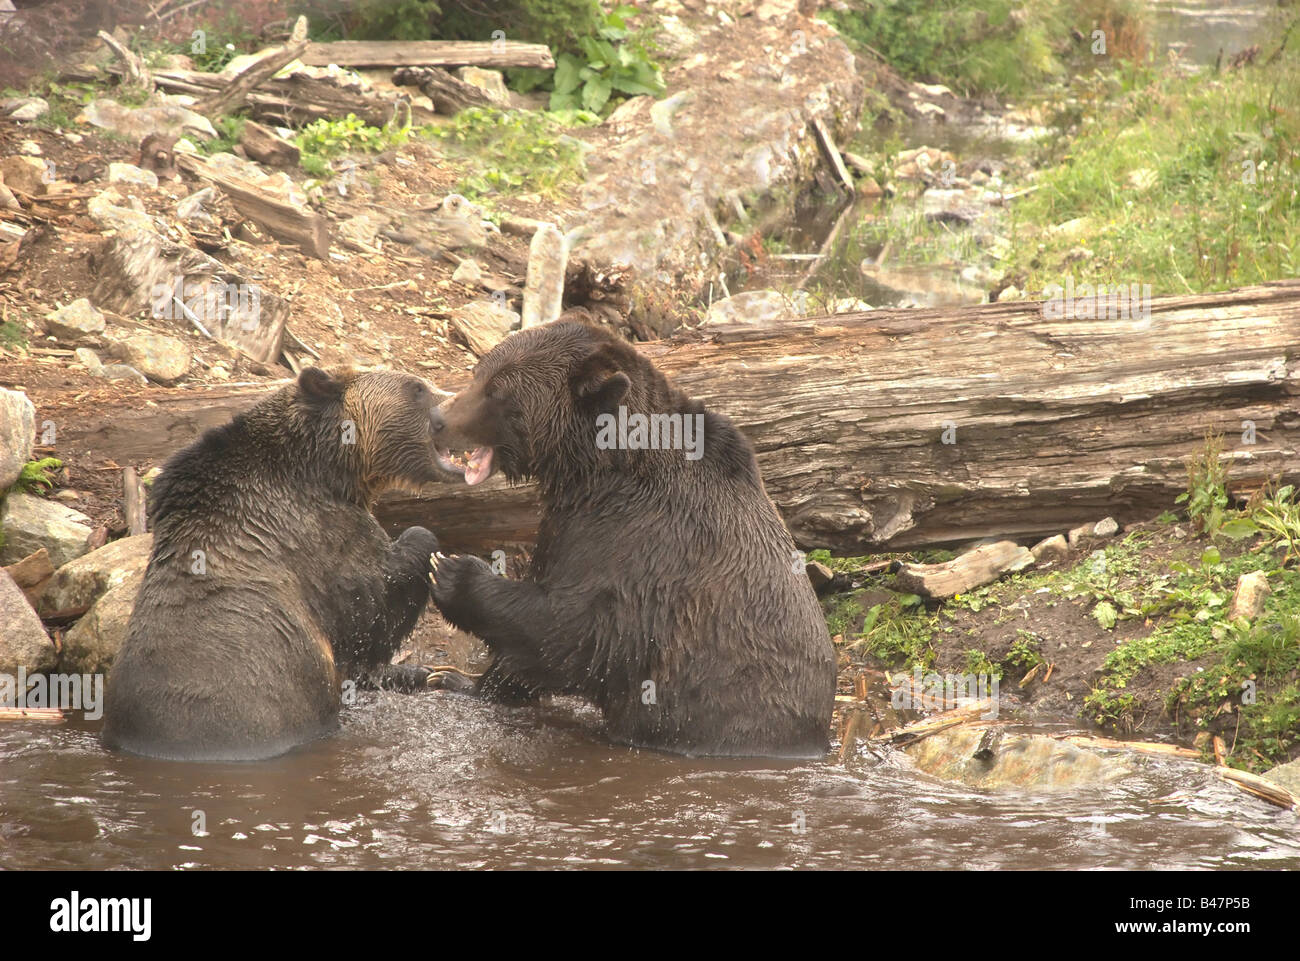 Il combattimento Orsi Grizzly - Due maschio orsi grizzly lottando per determinare una posizione dominante. Foto Stock